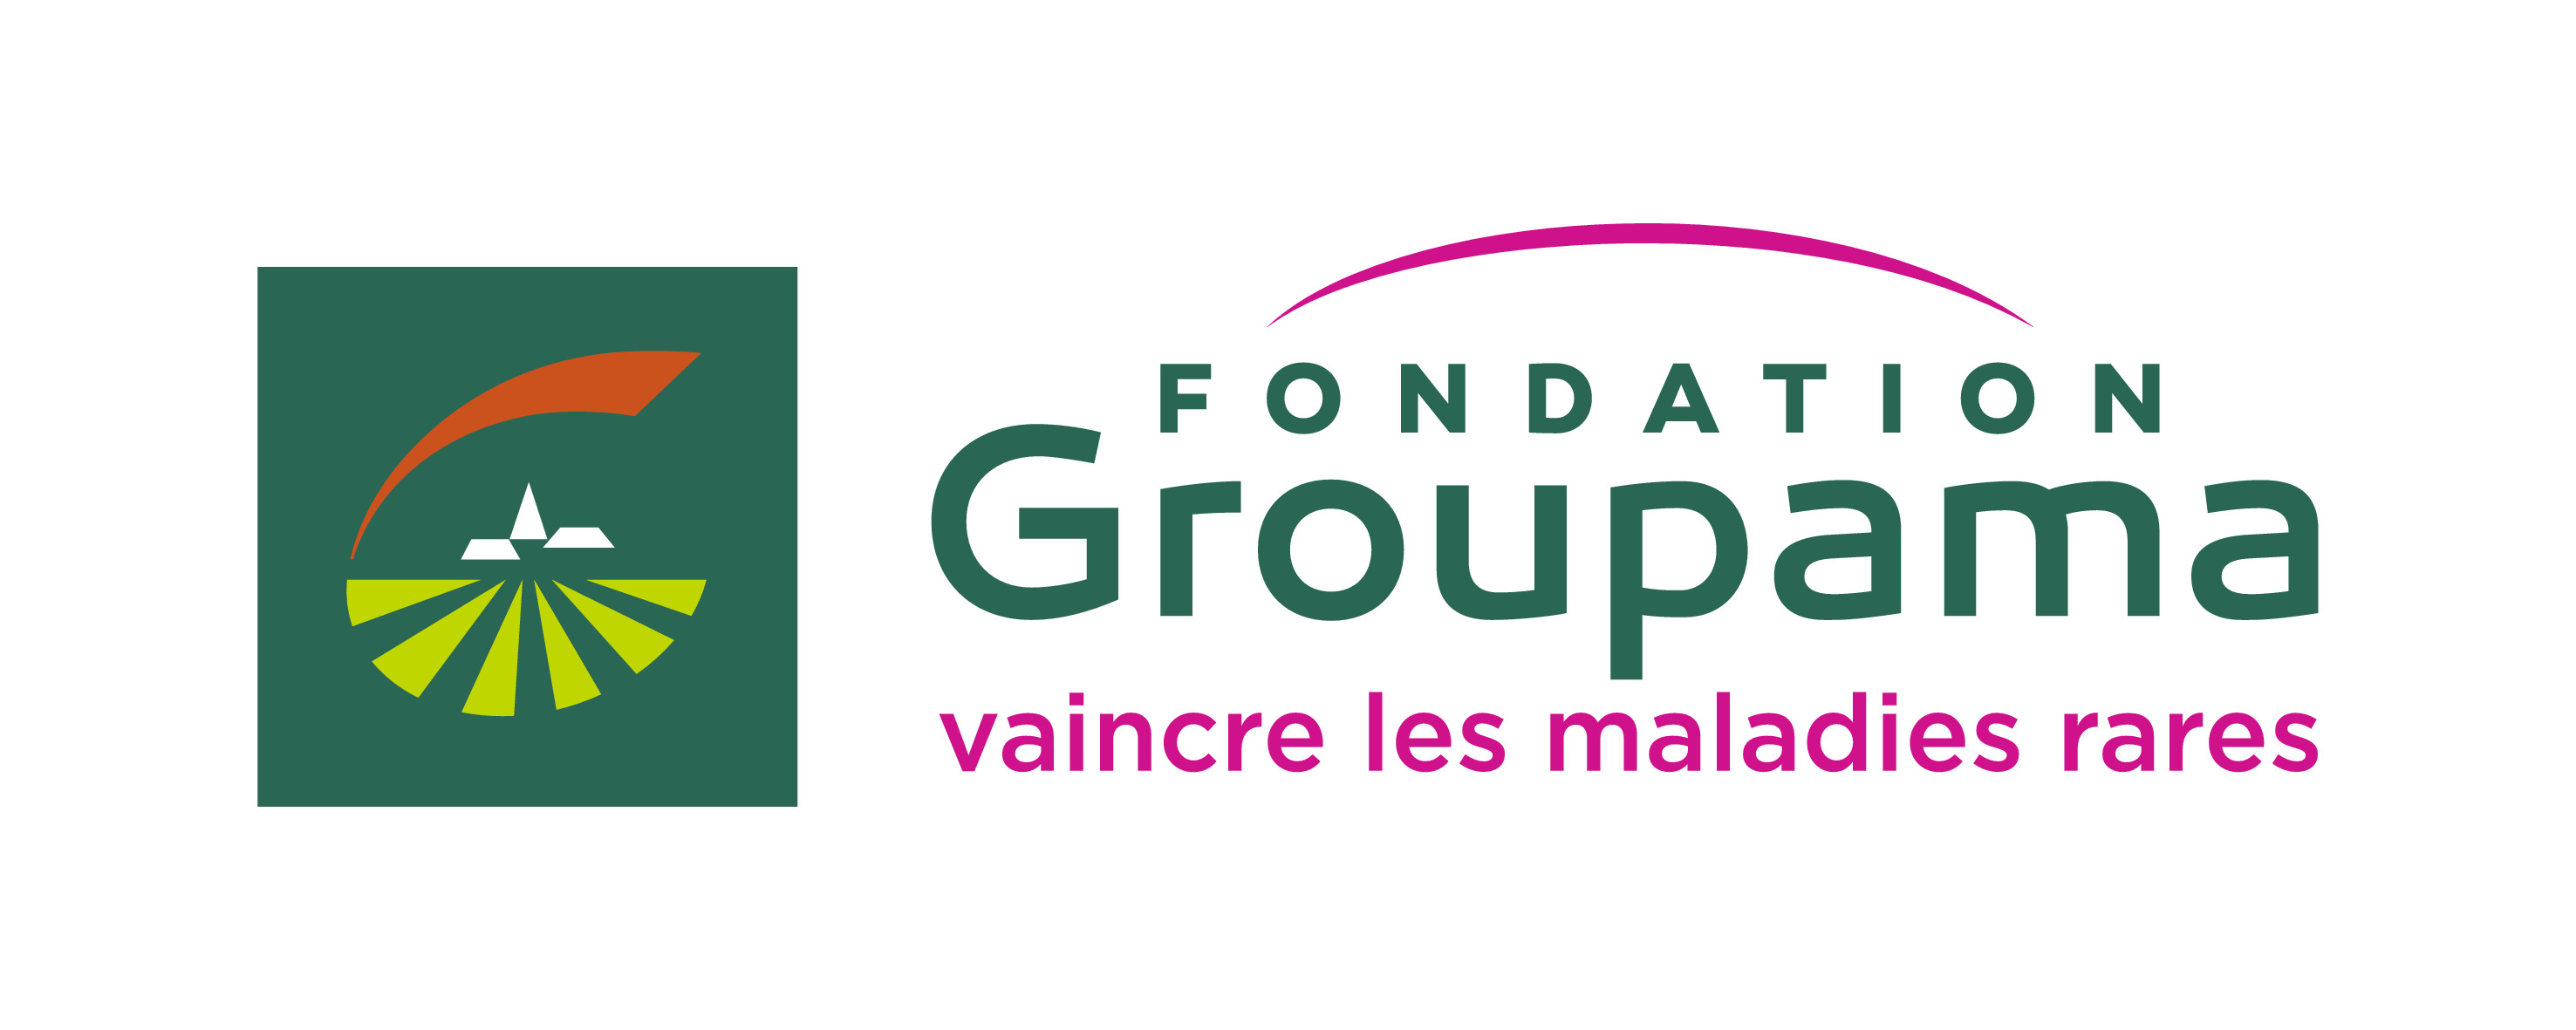 Fondation Groupama pour la santé : vaincre les maladies rares